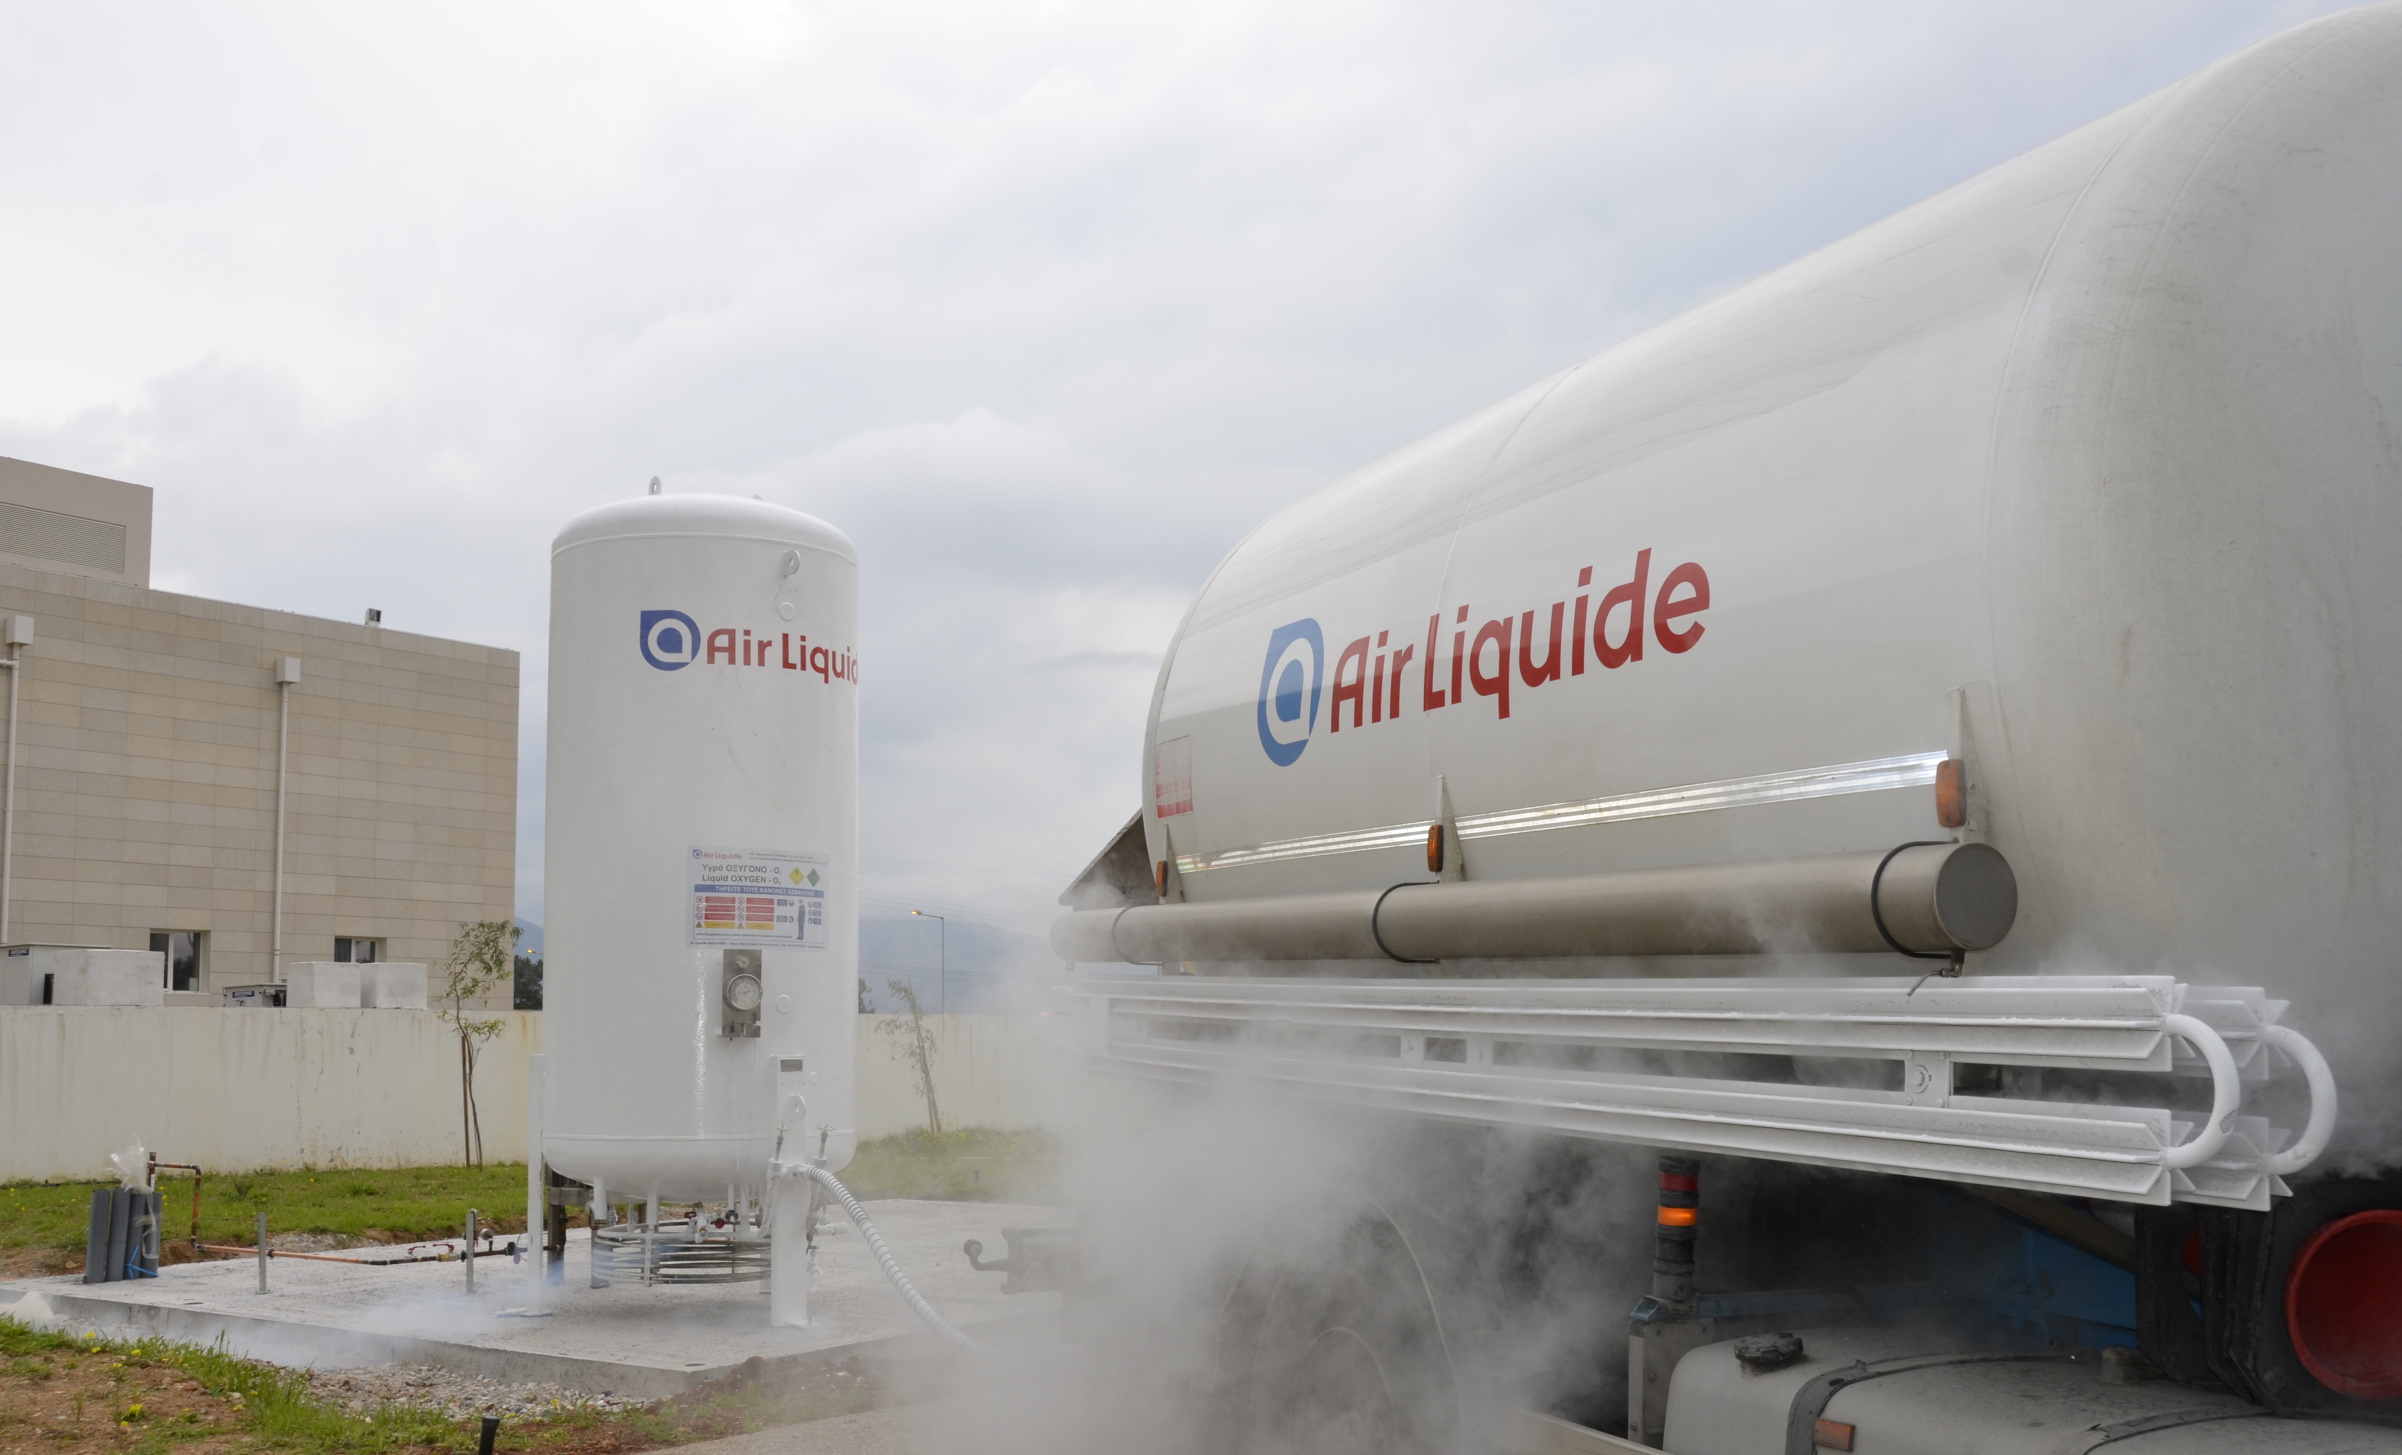 Η Air Liquide Hellas εγκατέστησε δεξαμενή σχεδόν 3.000 λίτρων και εξασφάλισε ιατρικό οξυγόνο για το Νέο Νοσοκομείο Χαλκίδας